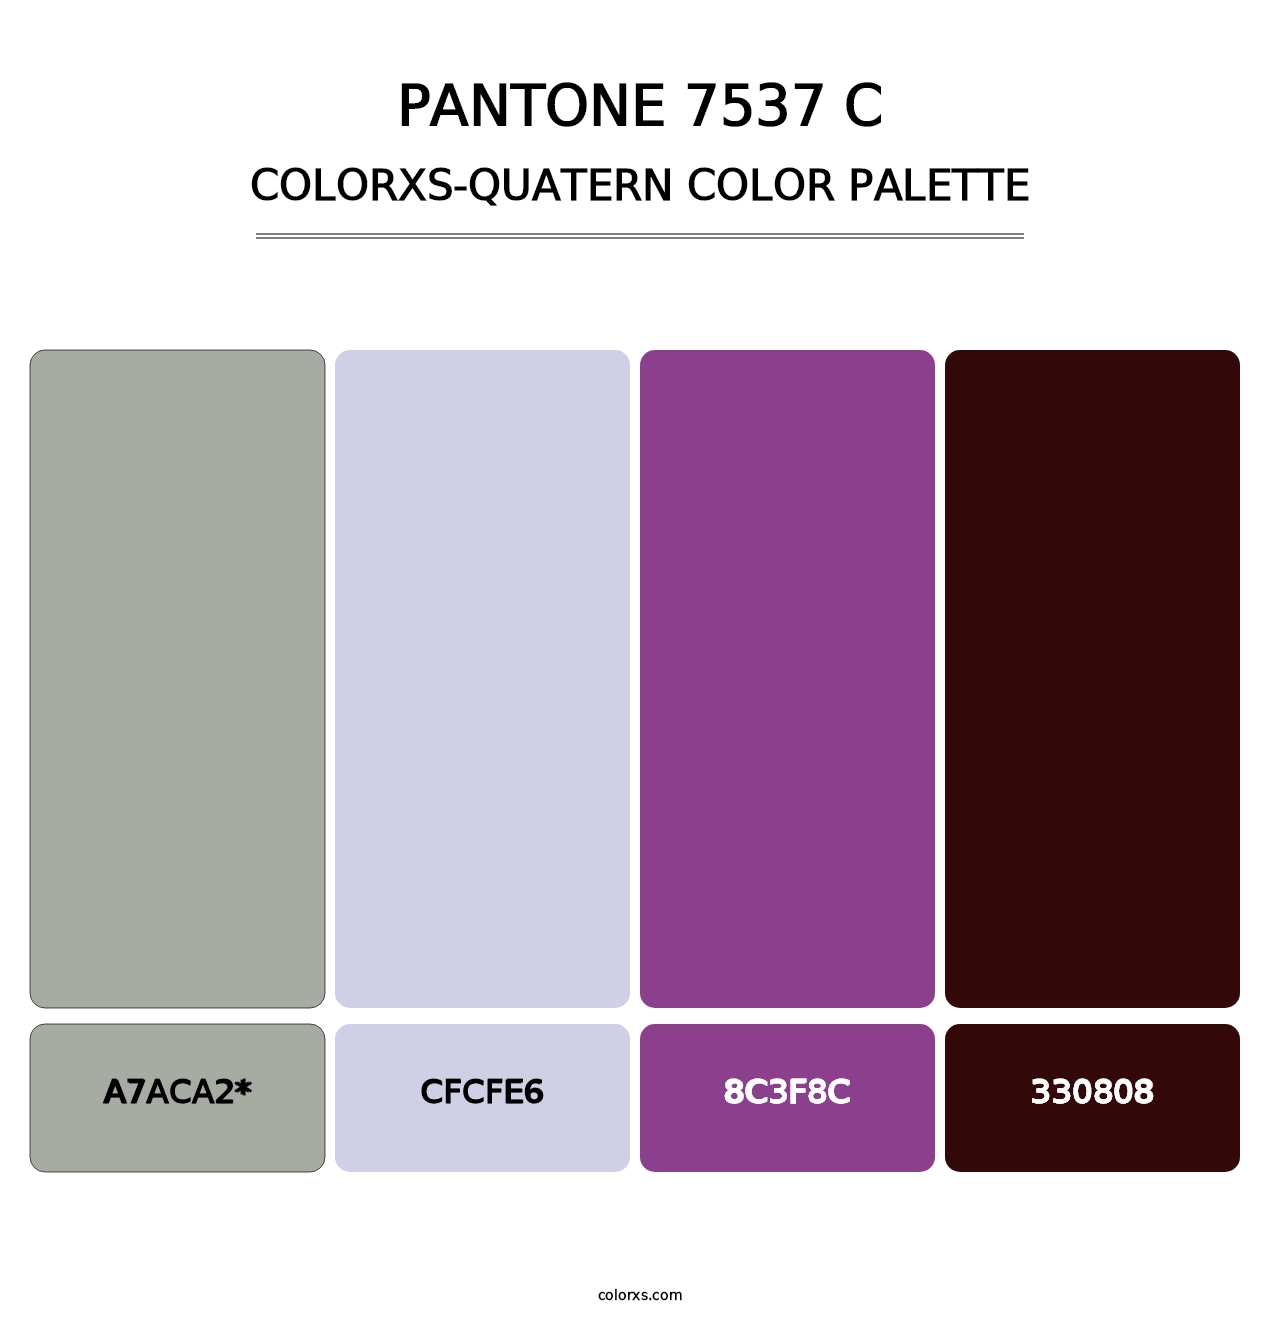 PANTONE 7537 C - Colorxs Quatern Palette